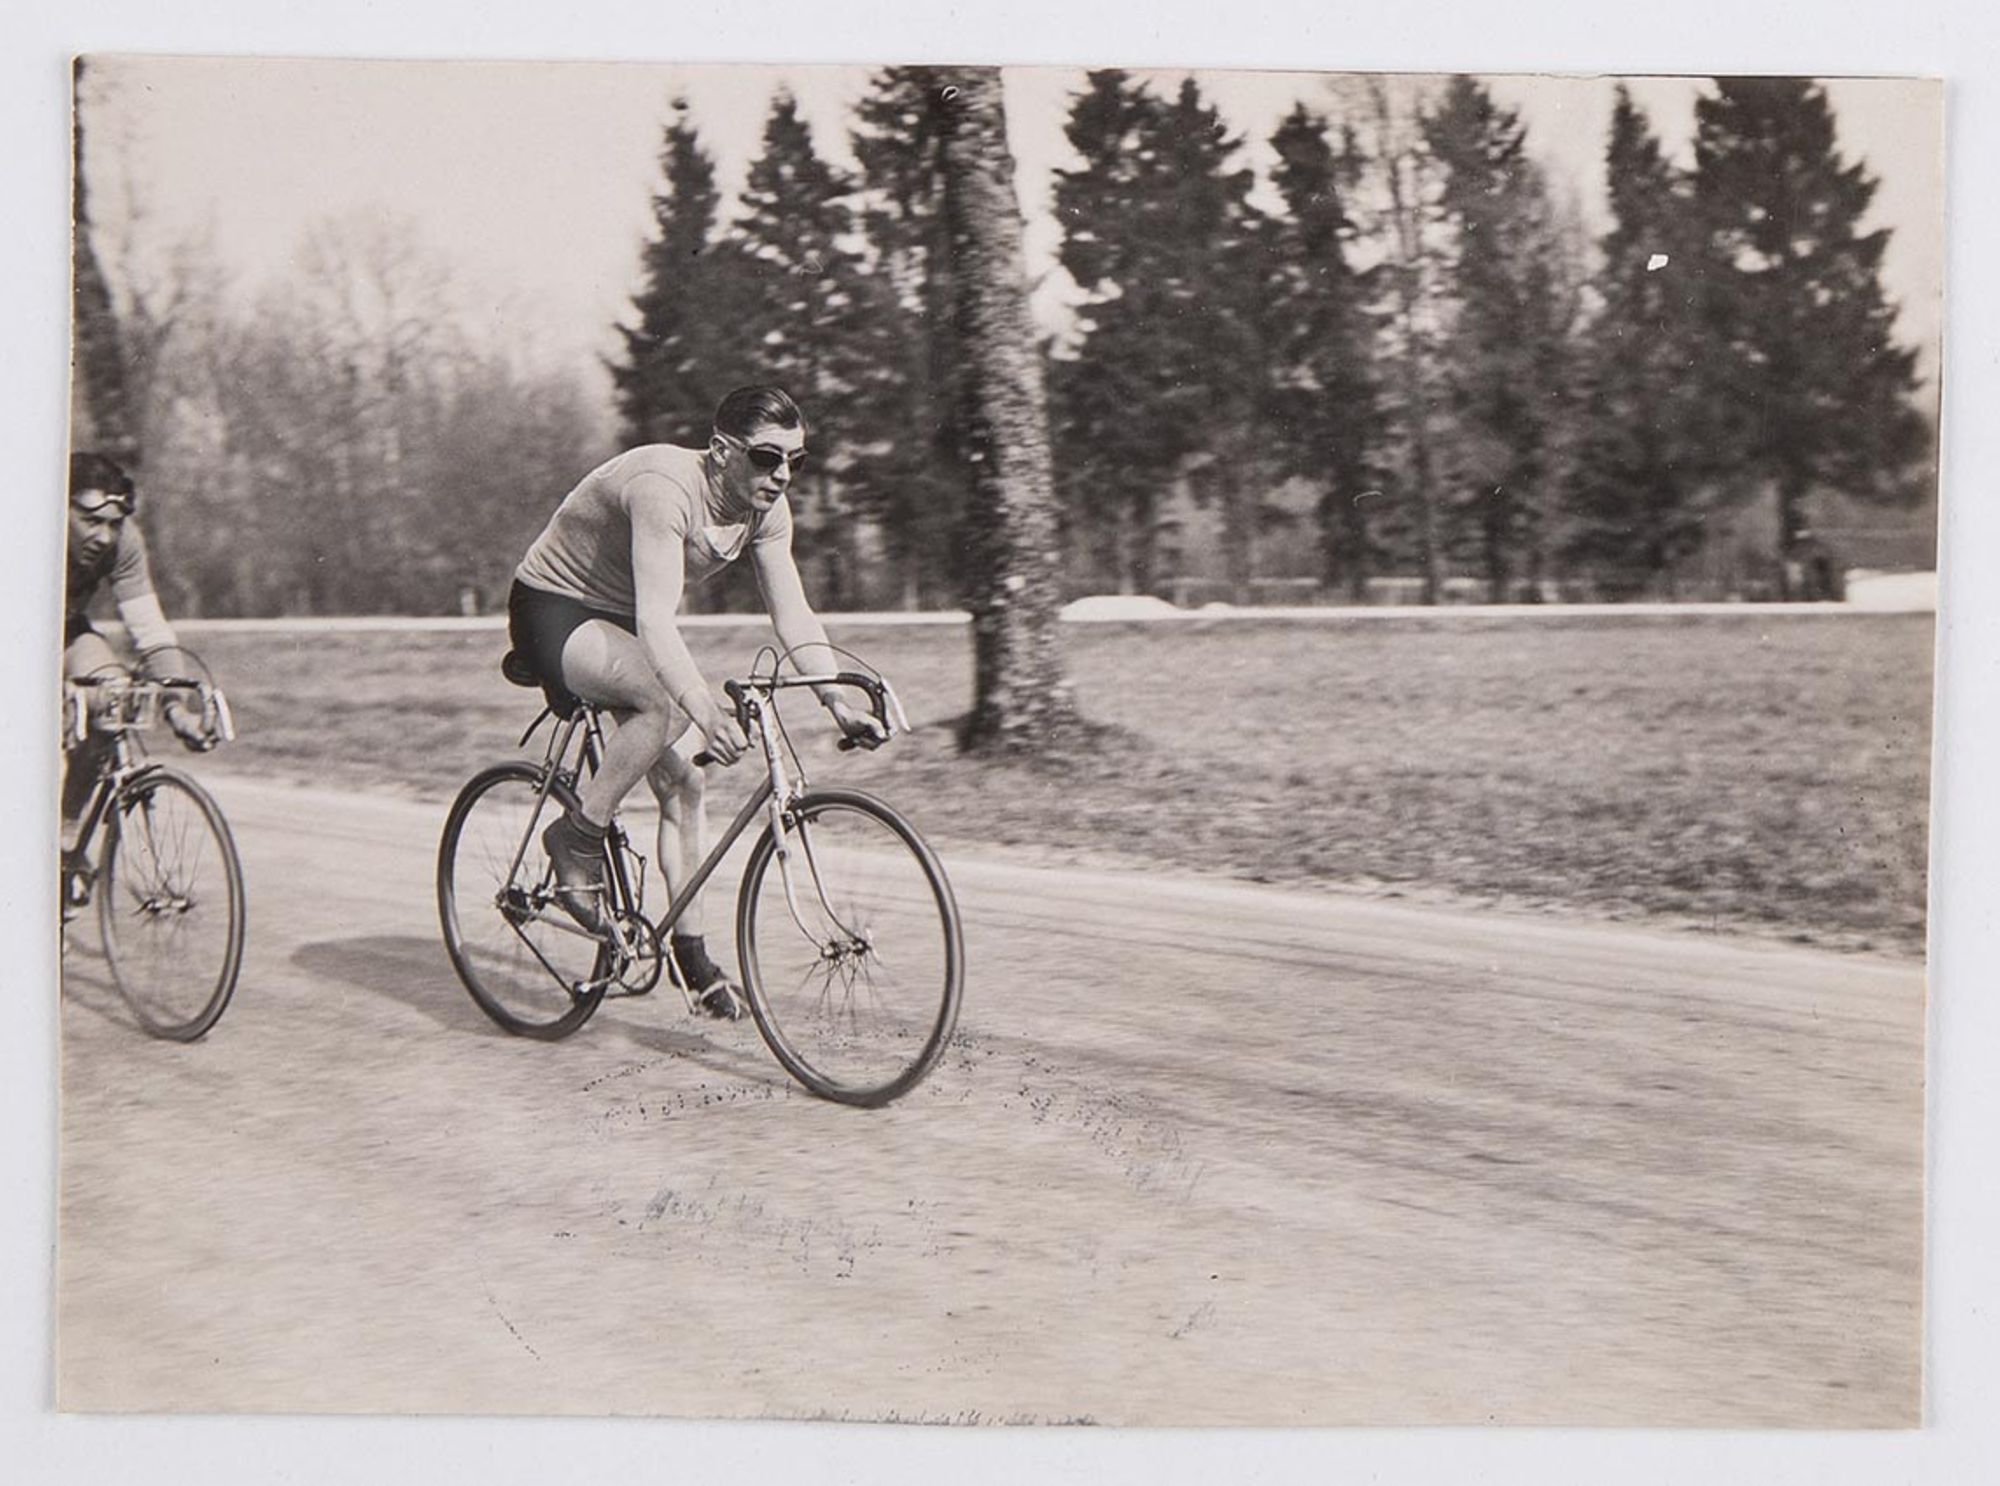 25 mars 1934. Troisième manche du prix d'ouverture de l'Union Vélo Club de l'Aube (U.V.C.A). Echappés du peloton, J. Krubs et Bardelli avancent sur la route de Bar-sur-Seine. J. Krubs remporte la manche et le prix.